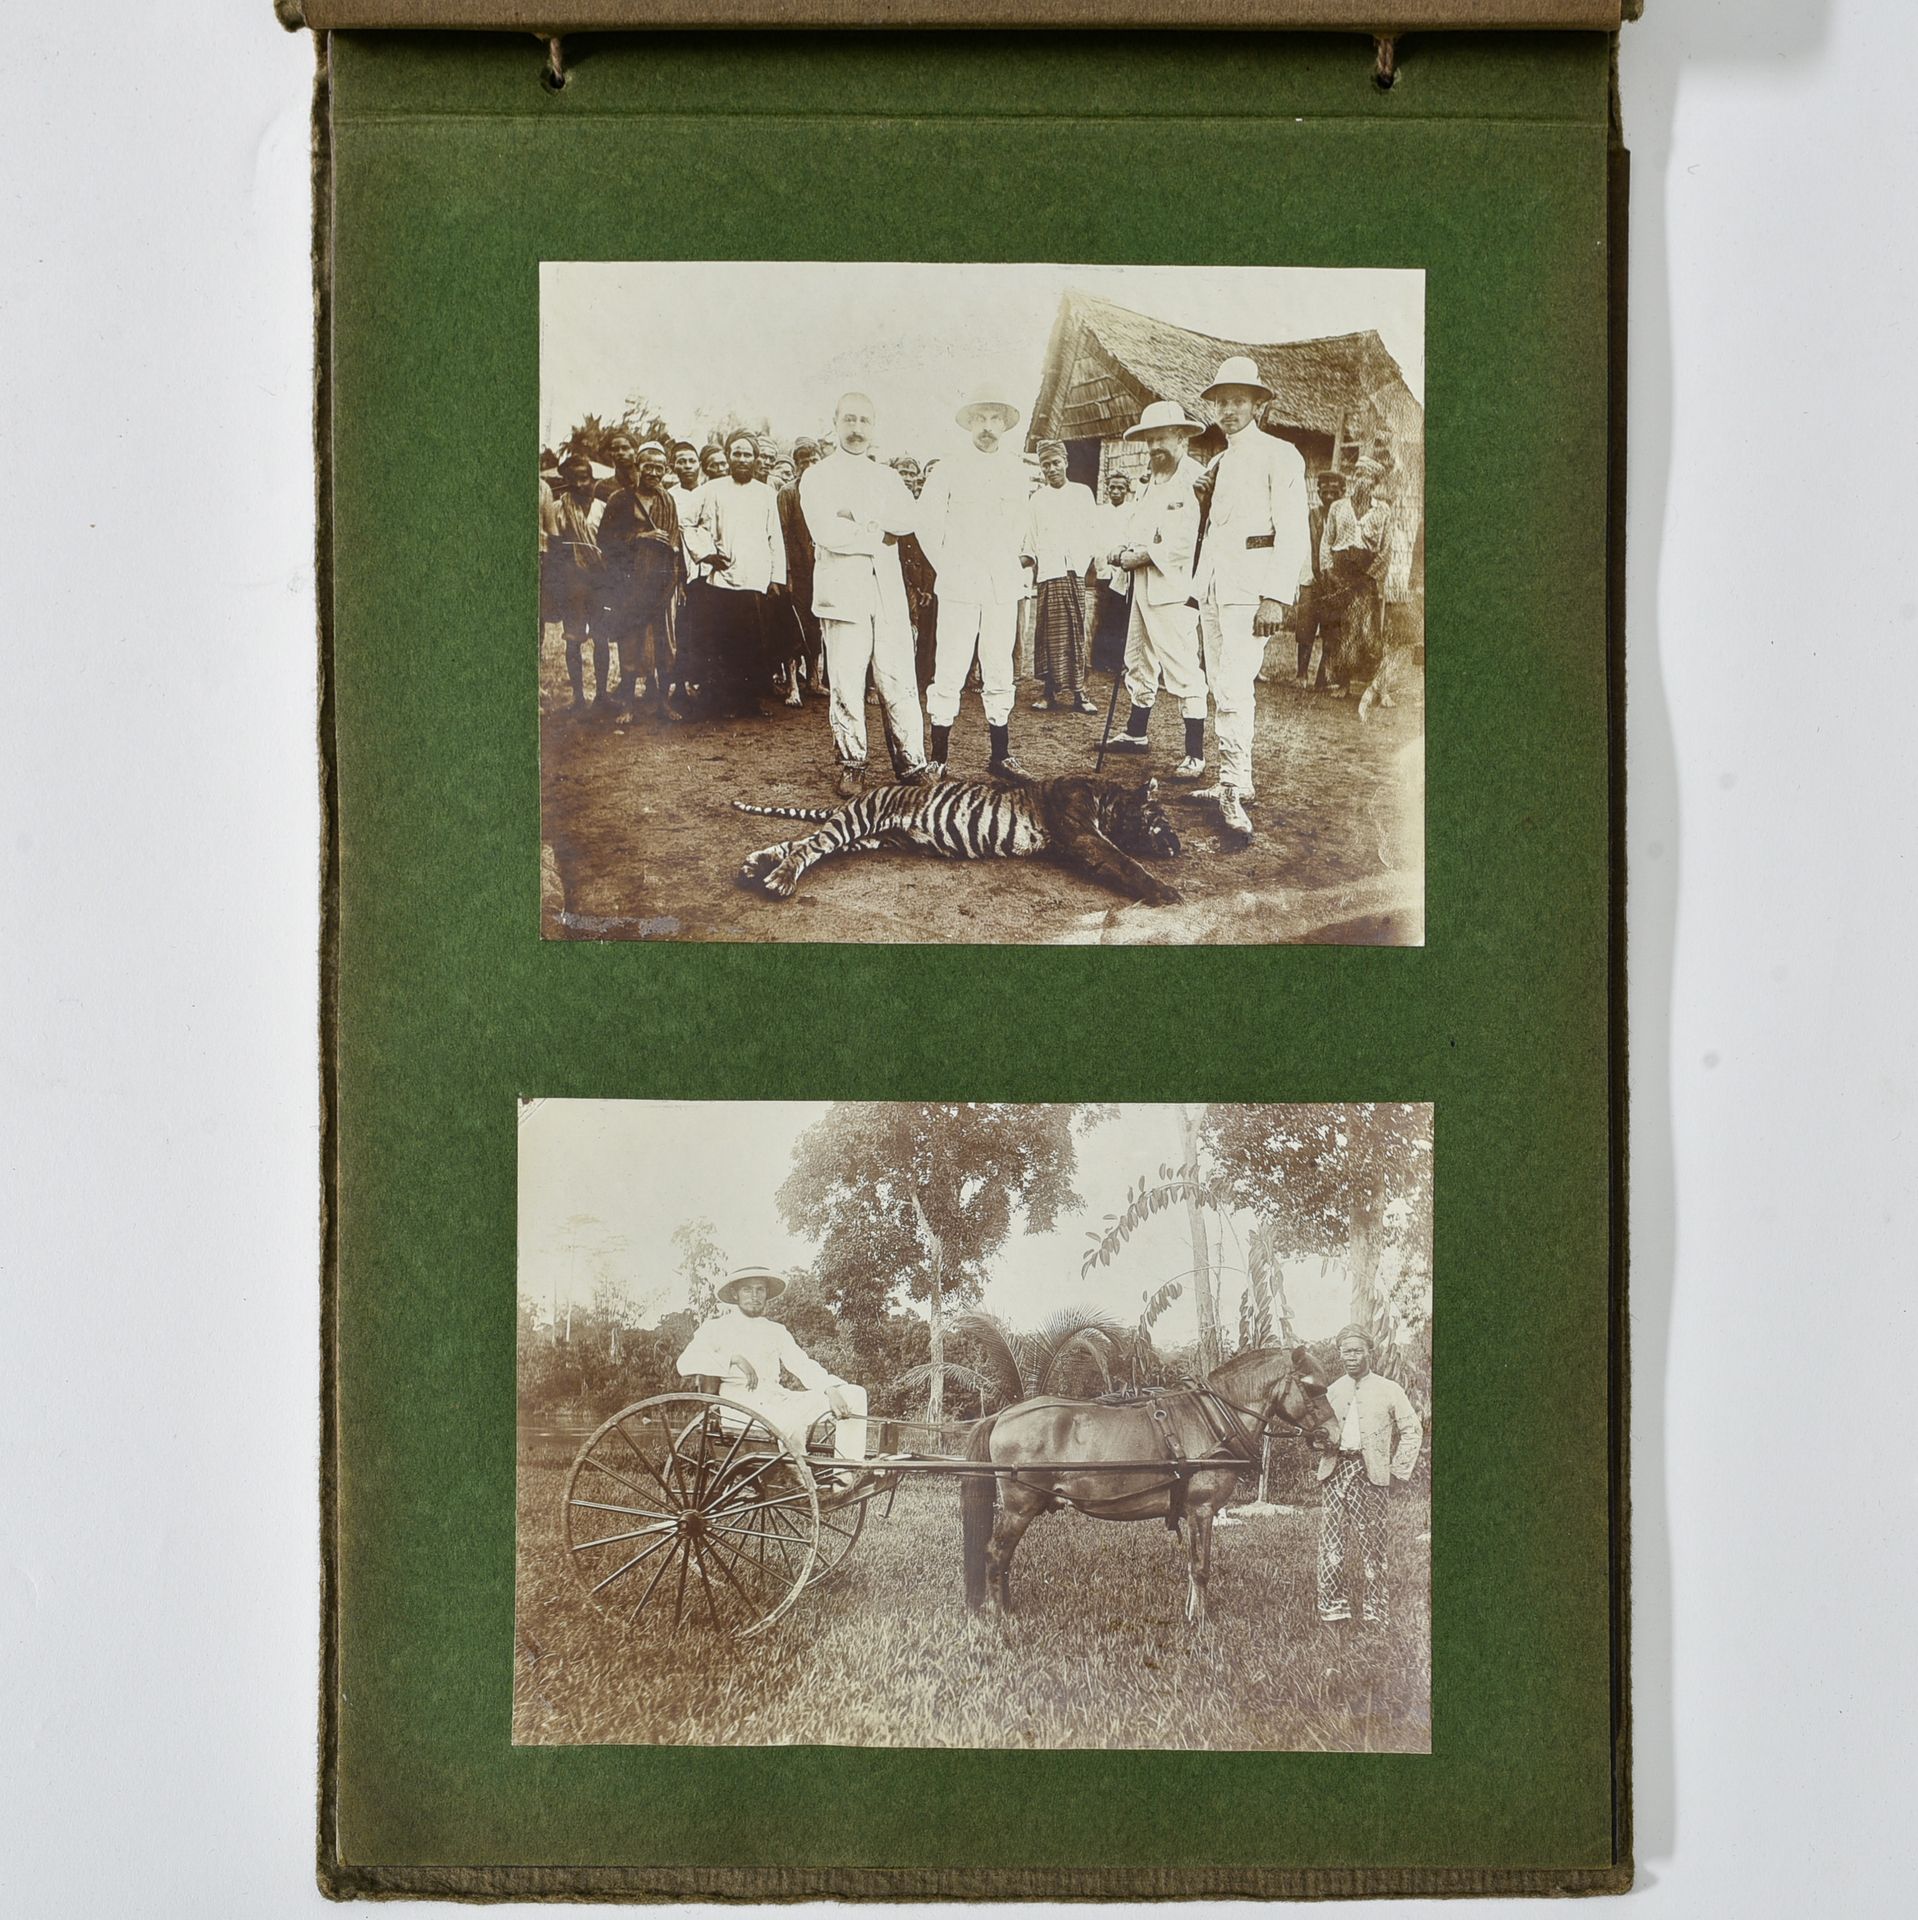 Album de photographies anciennes INDONESIA AND BELGIUM CA. 1900

Album of antiqu&hellip;